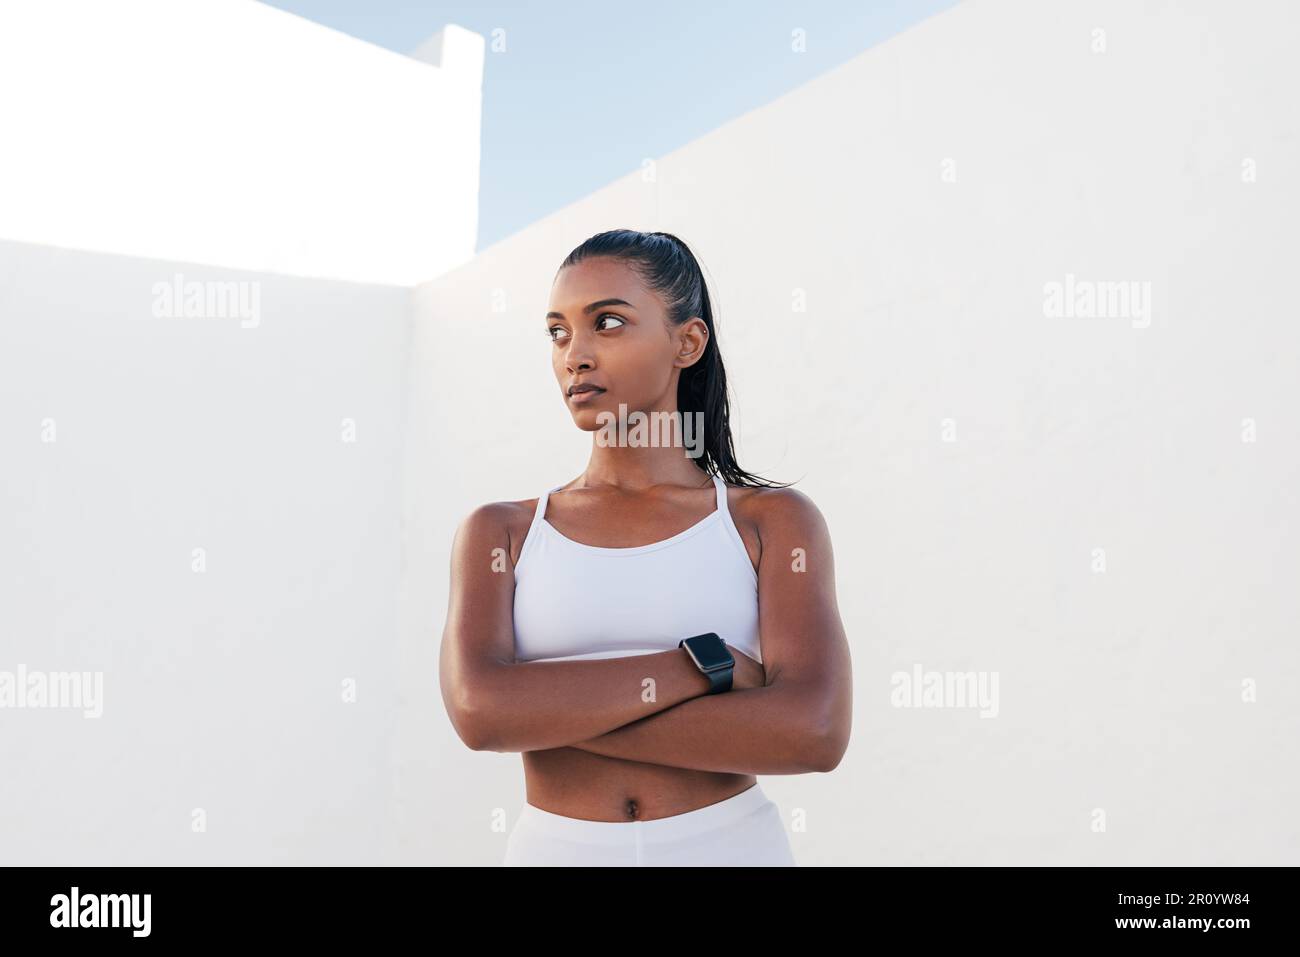 Influyente de fitness fuerte y confiado. Mujer en ropa deportiva blanca con las manos cruzadas. Foto de stock